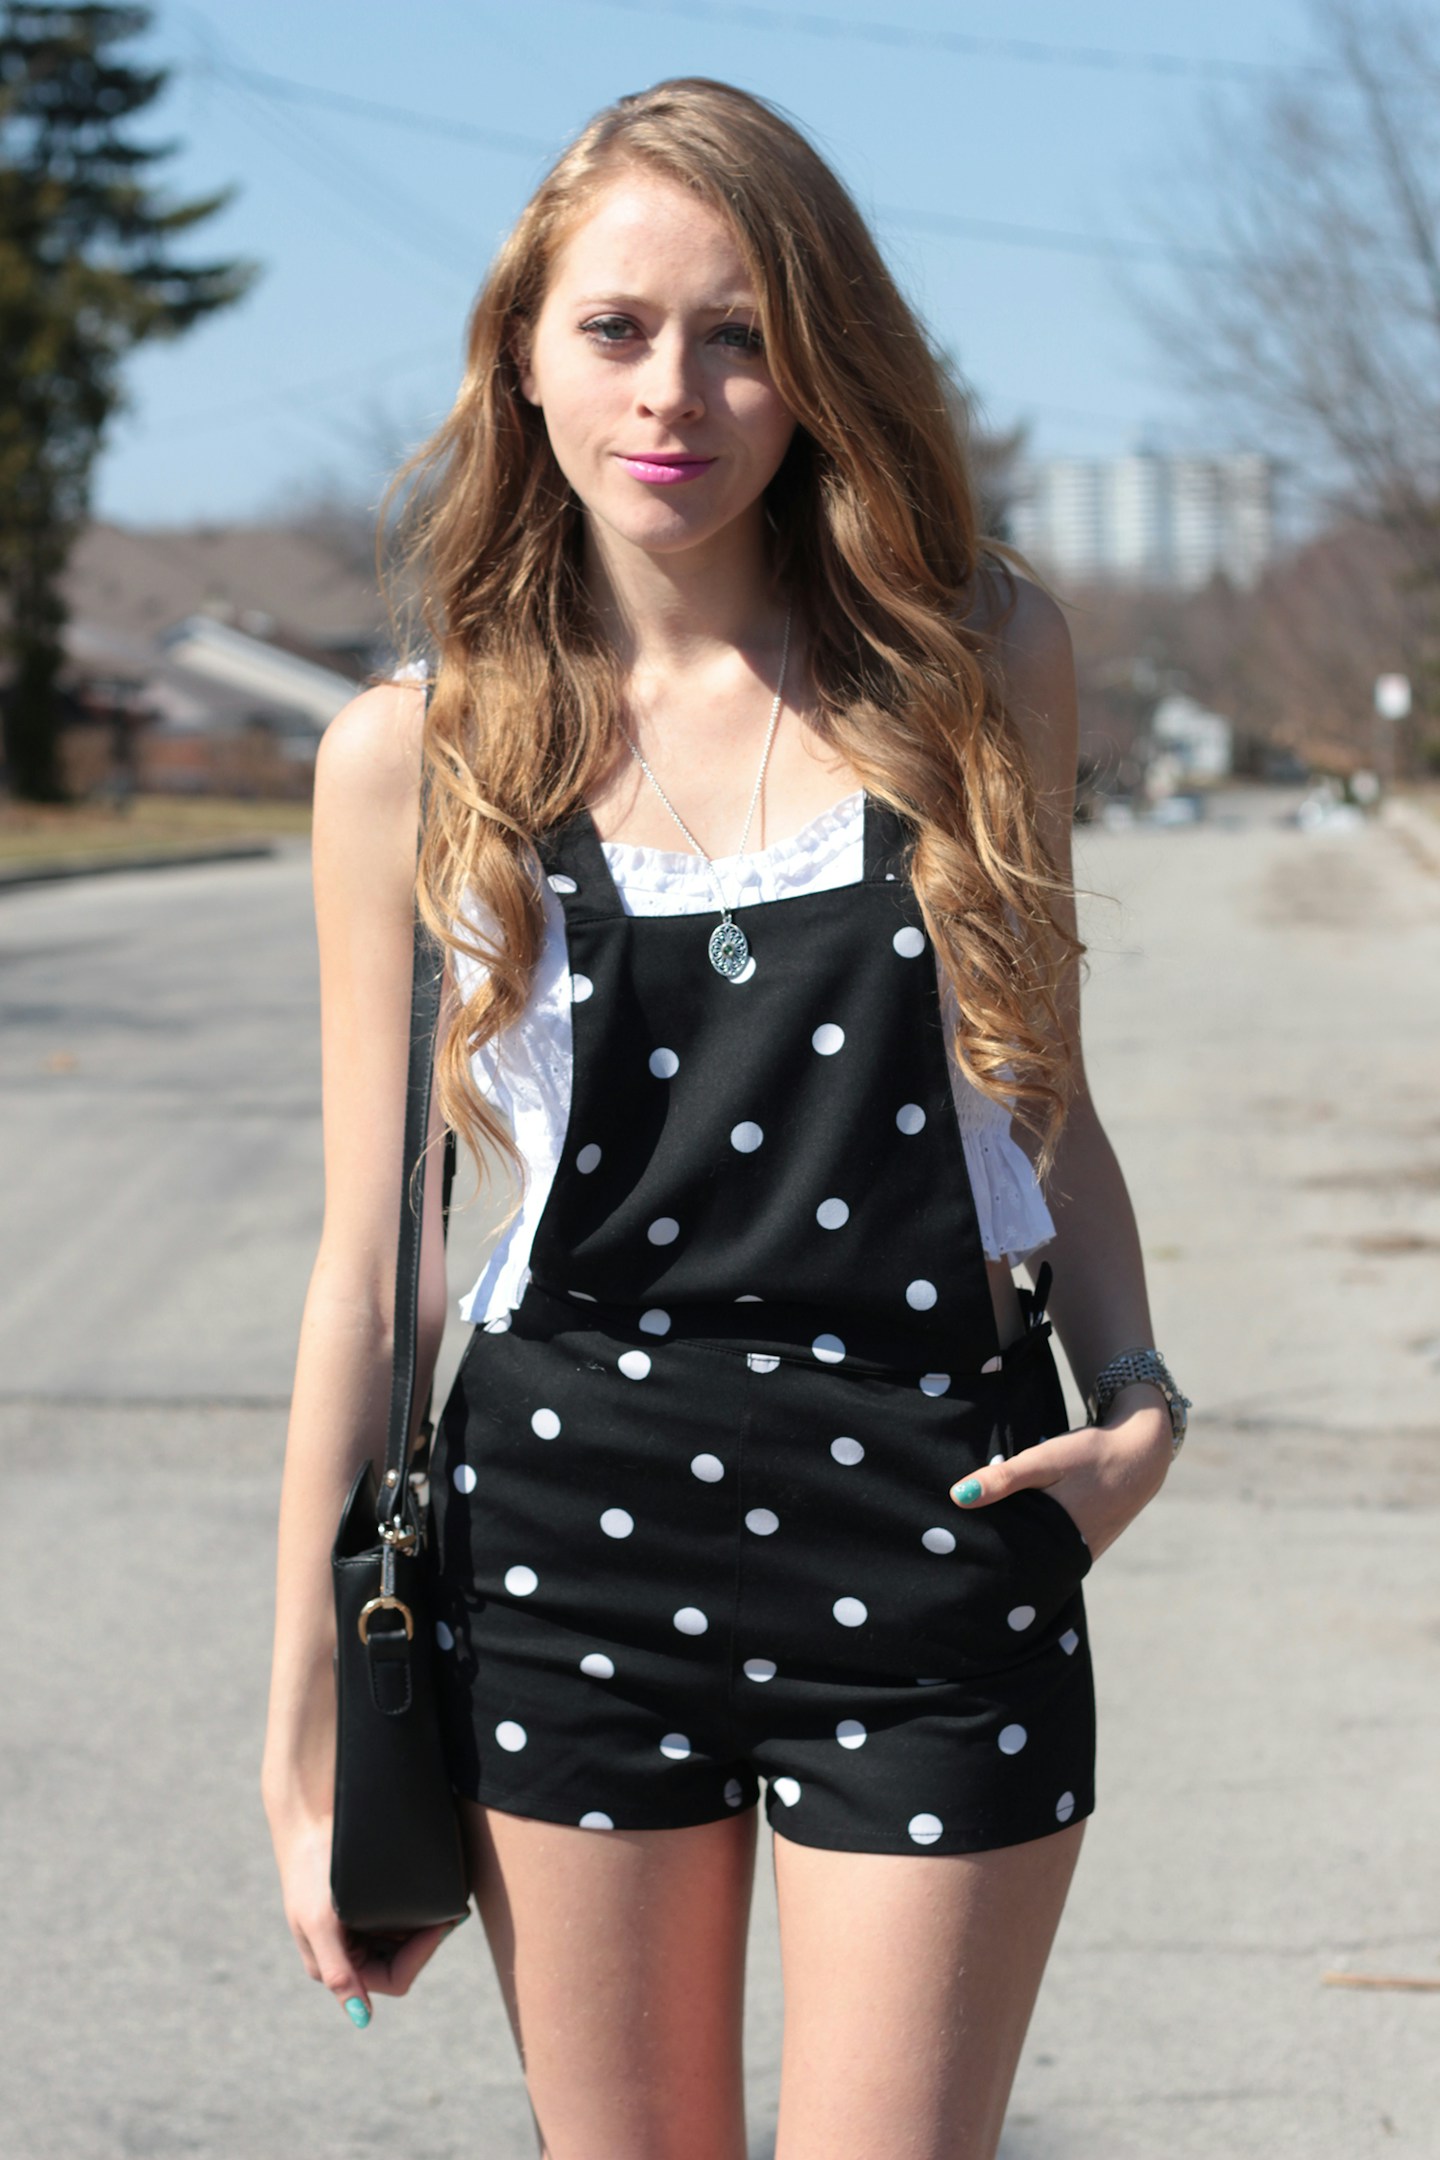 Black & white polka-dot overalls